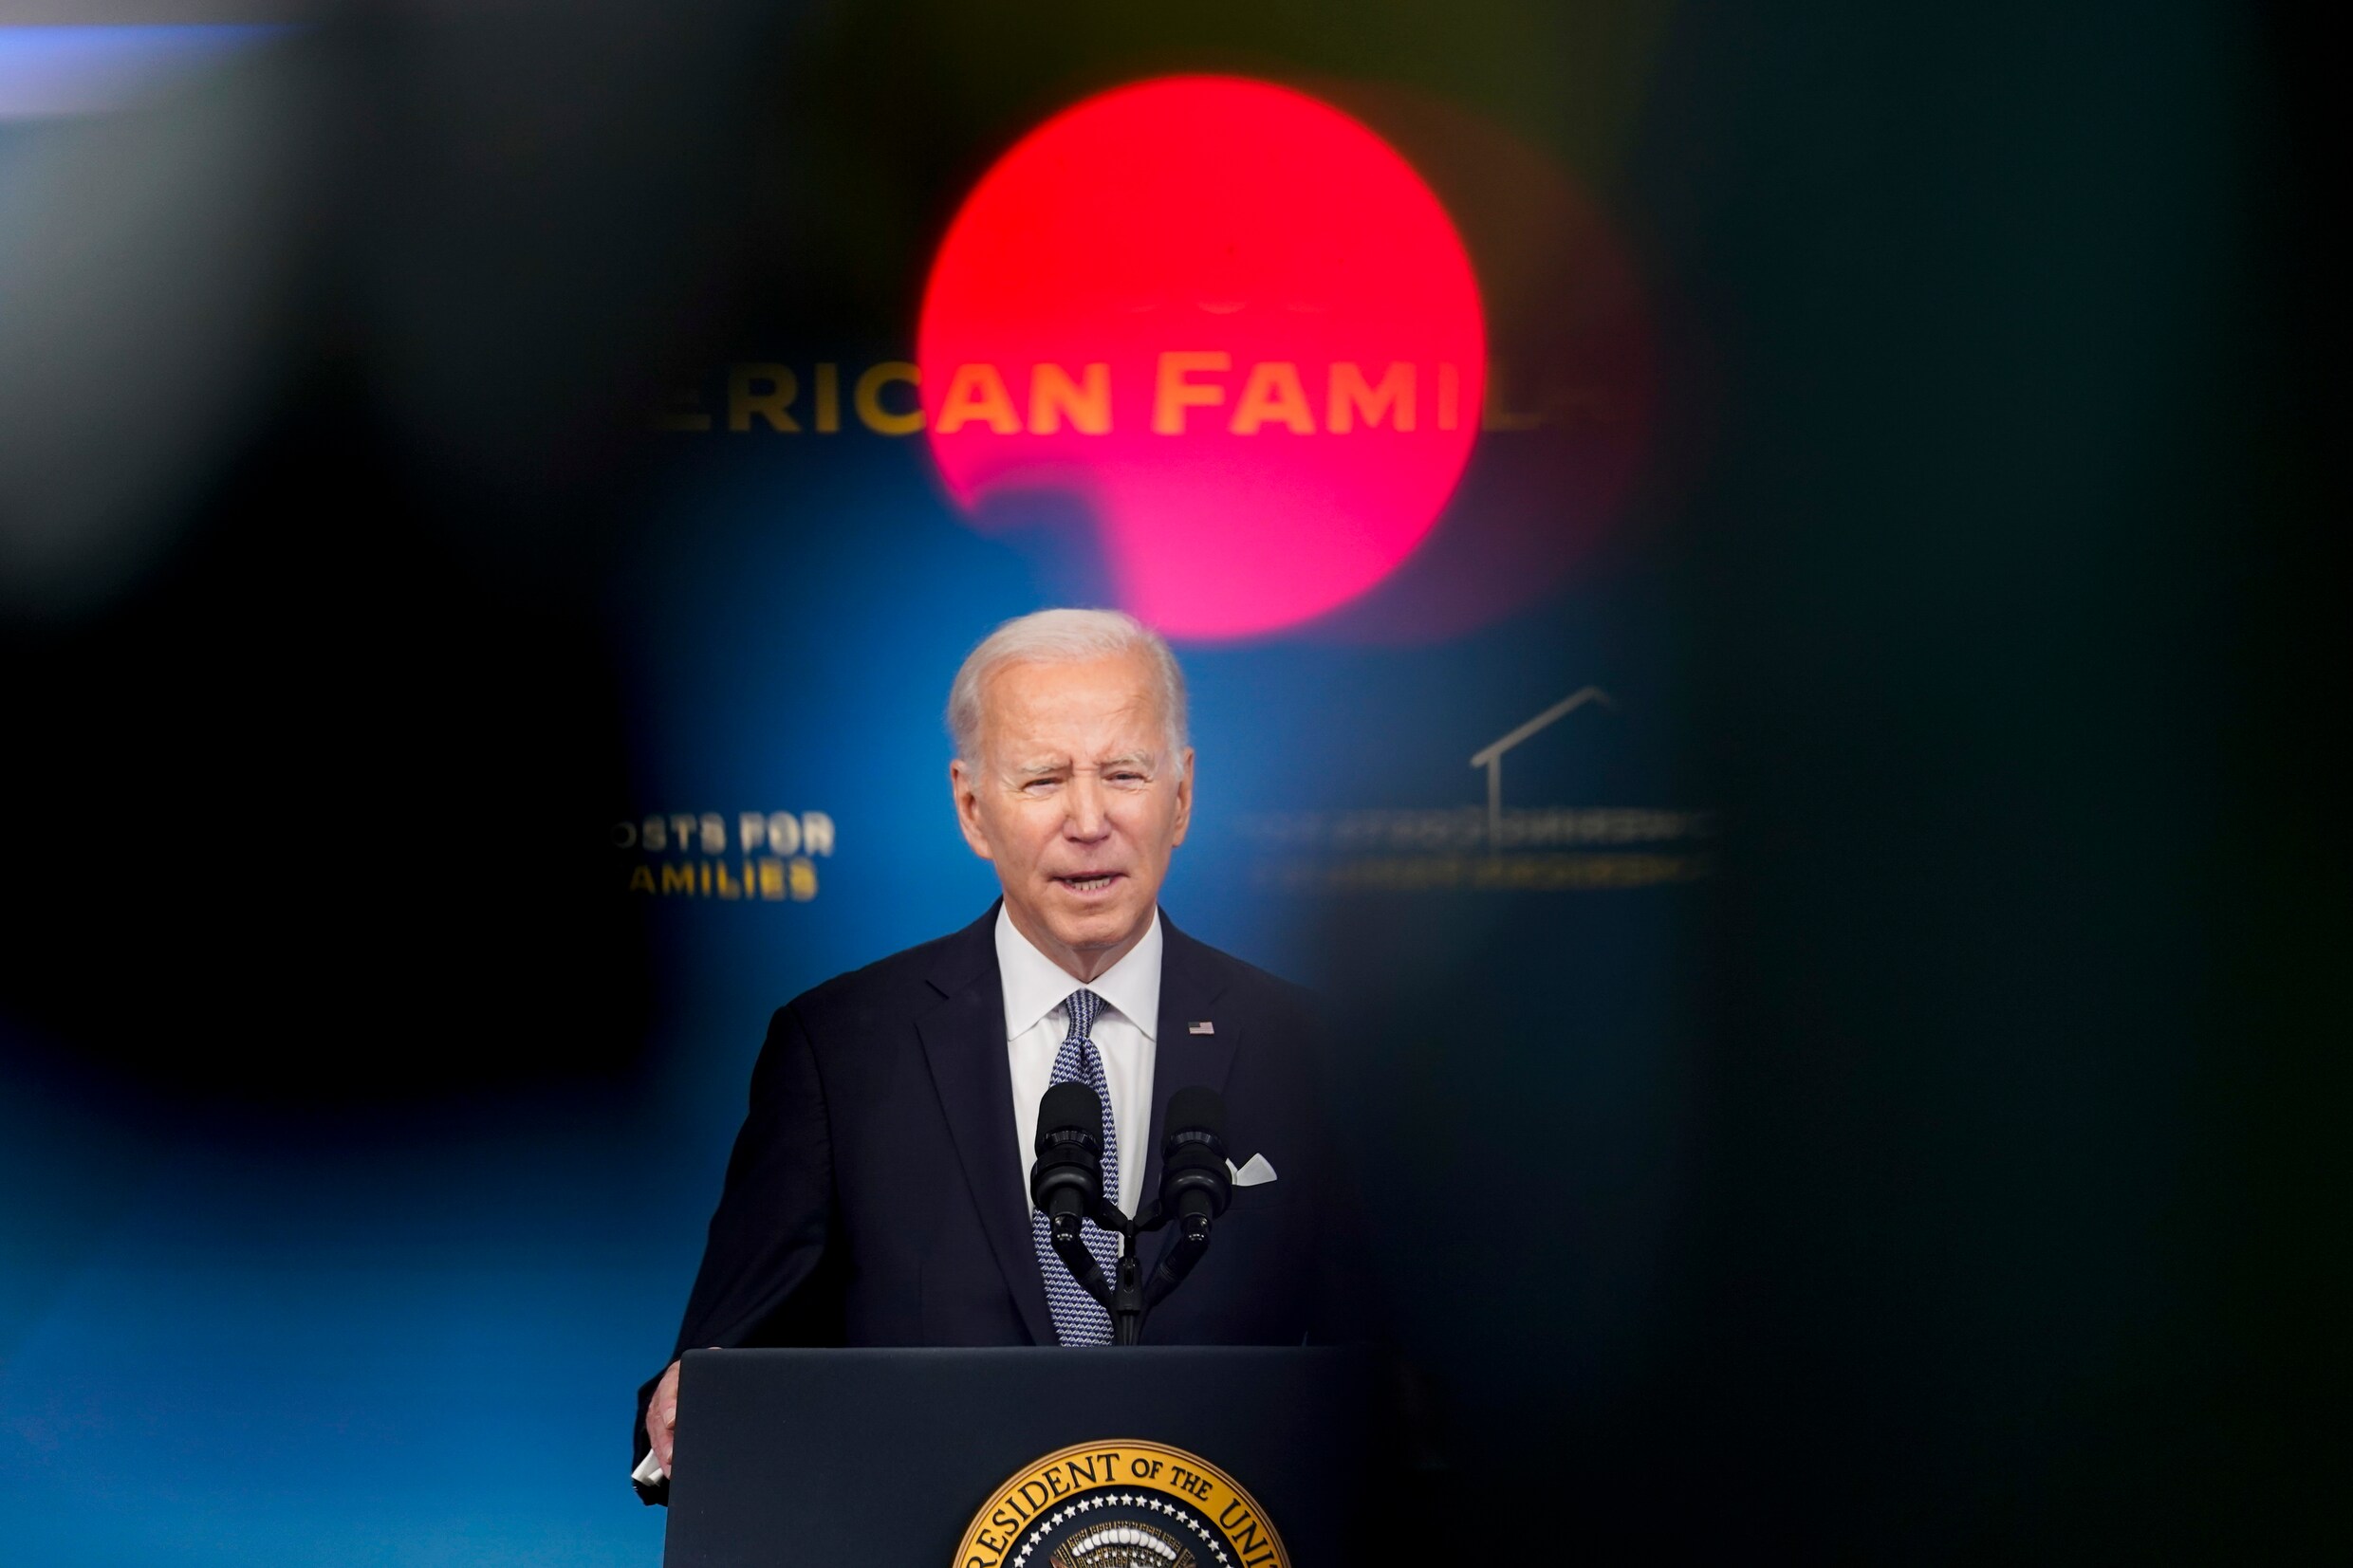 Nieuwe vondst geheime documenten in garage Joe Biden levert president politieke hoofdpijn op